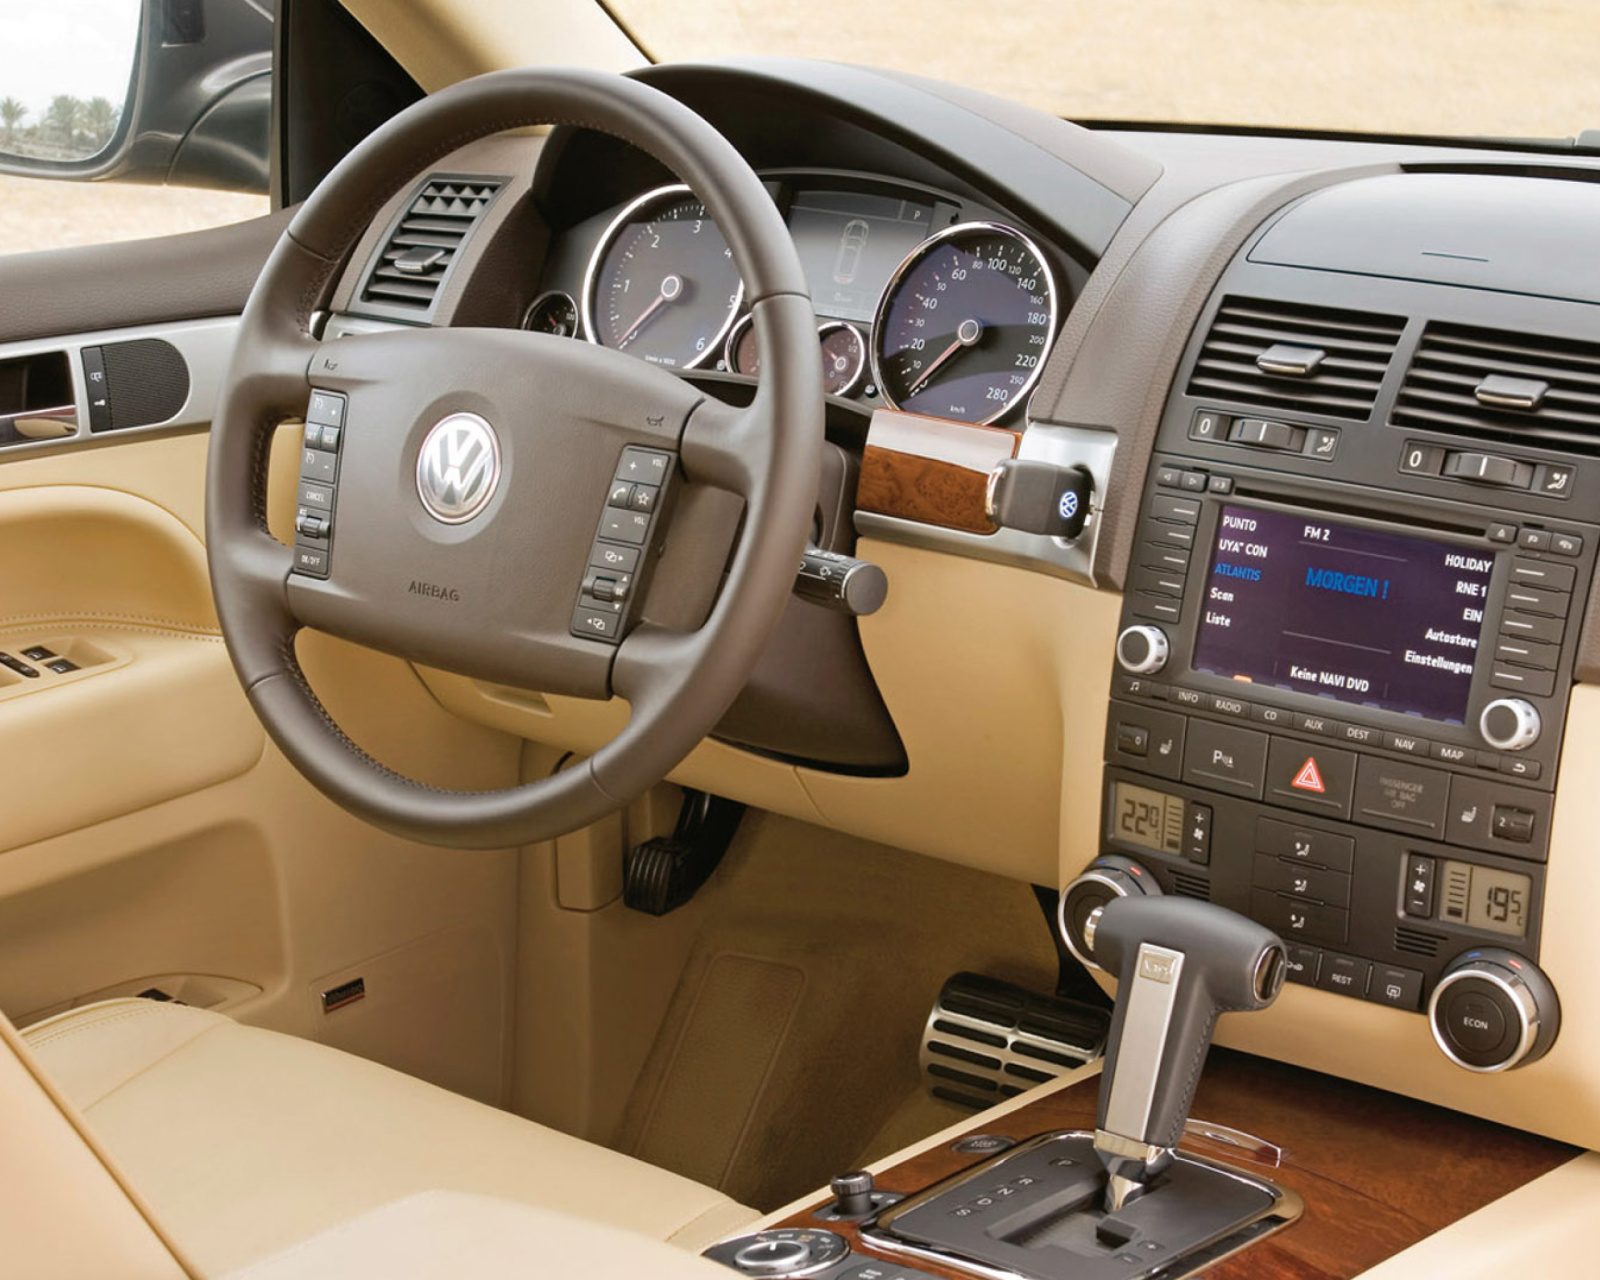 Volkswagen Touareg v10 TDI Interior screenshot #1 1600x1280